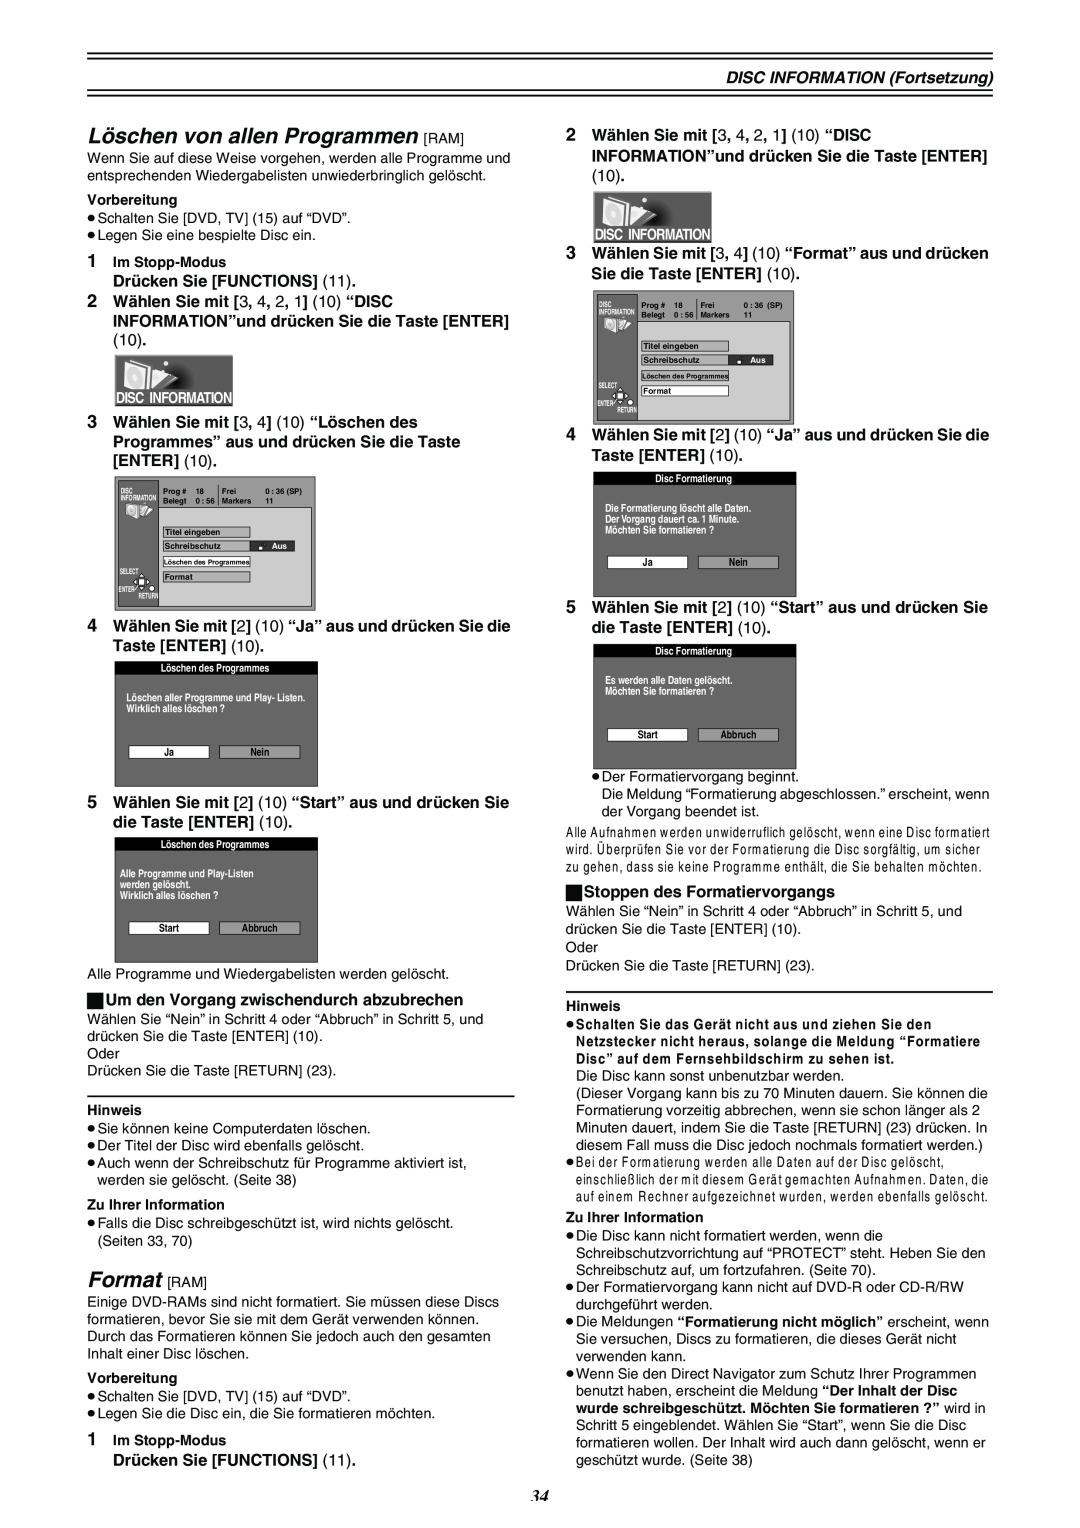 Panasonic DMR-E30 manual Löschen von allen Programmen RAM, Format RAM, Alle Programme und Play-Listen werden gelöscht 